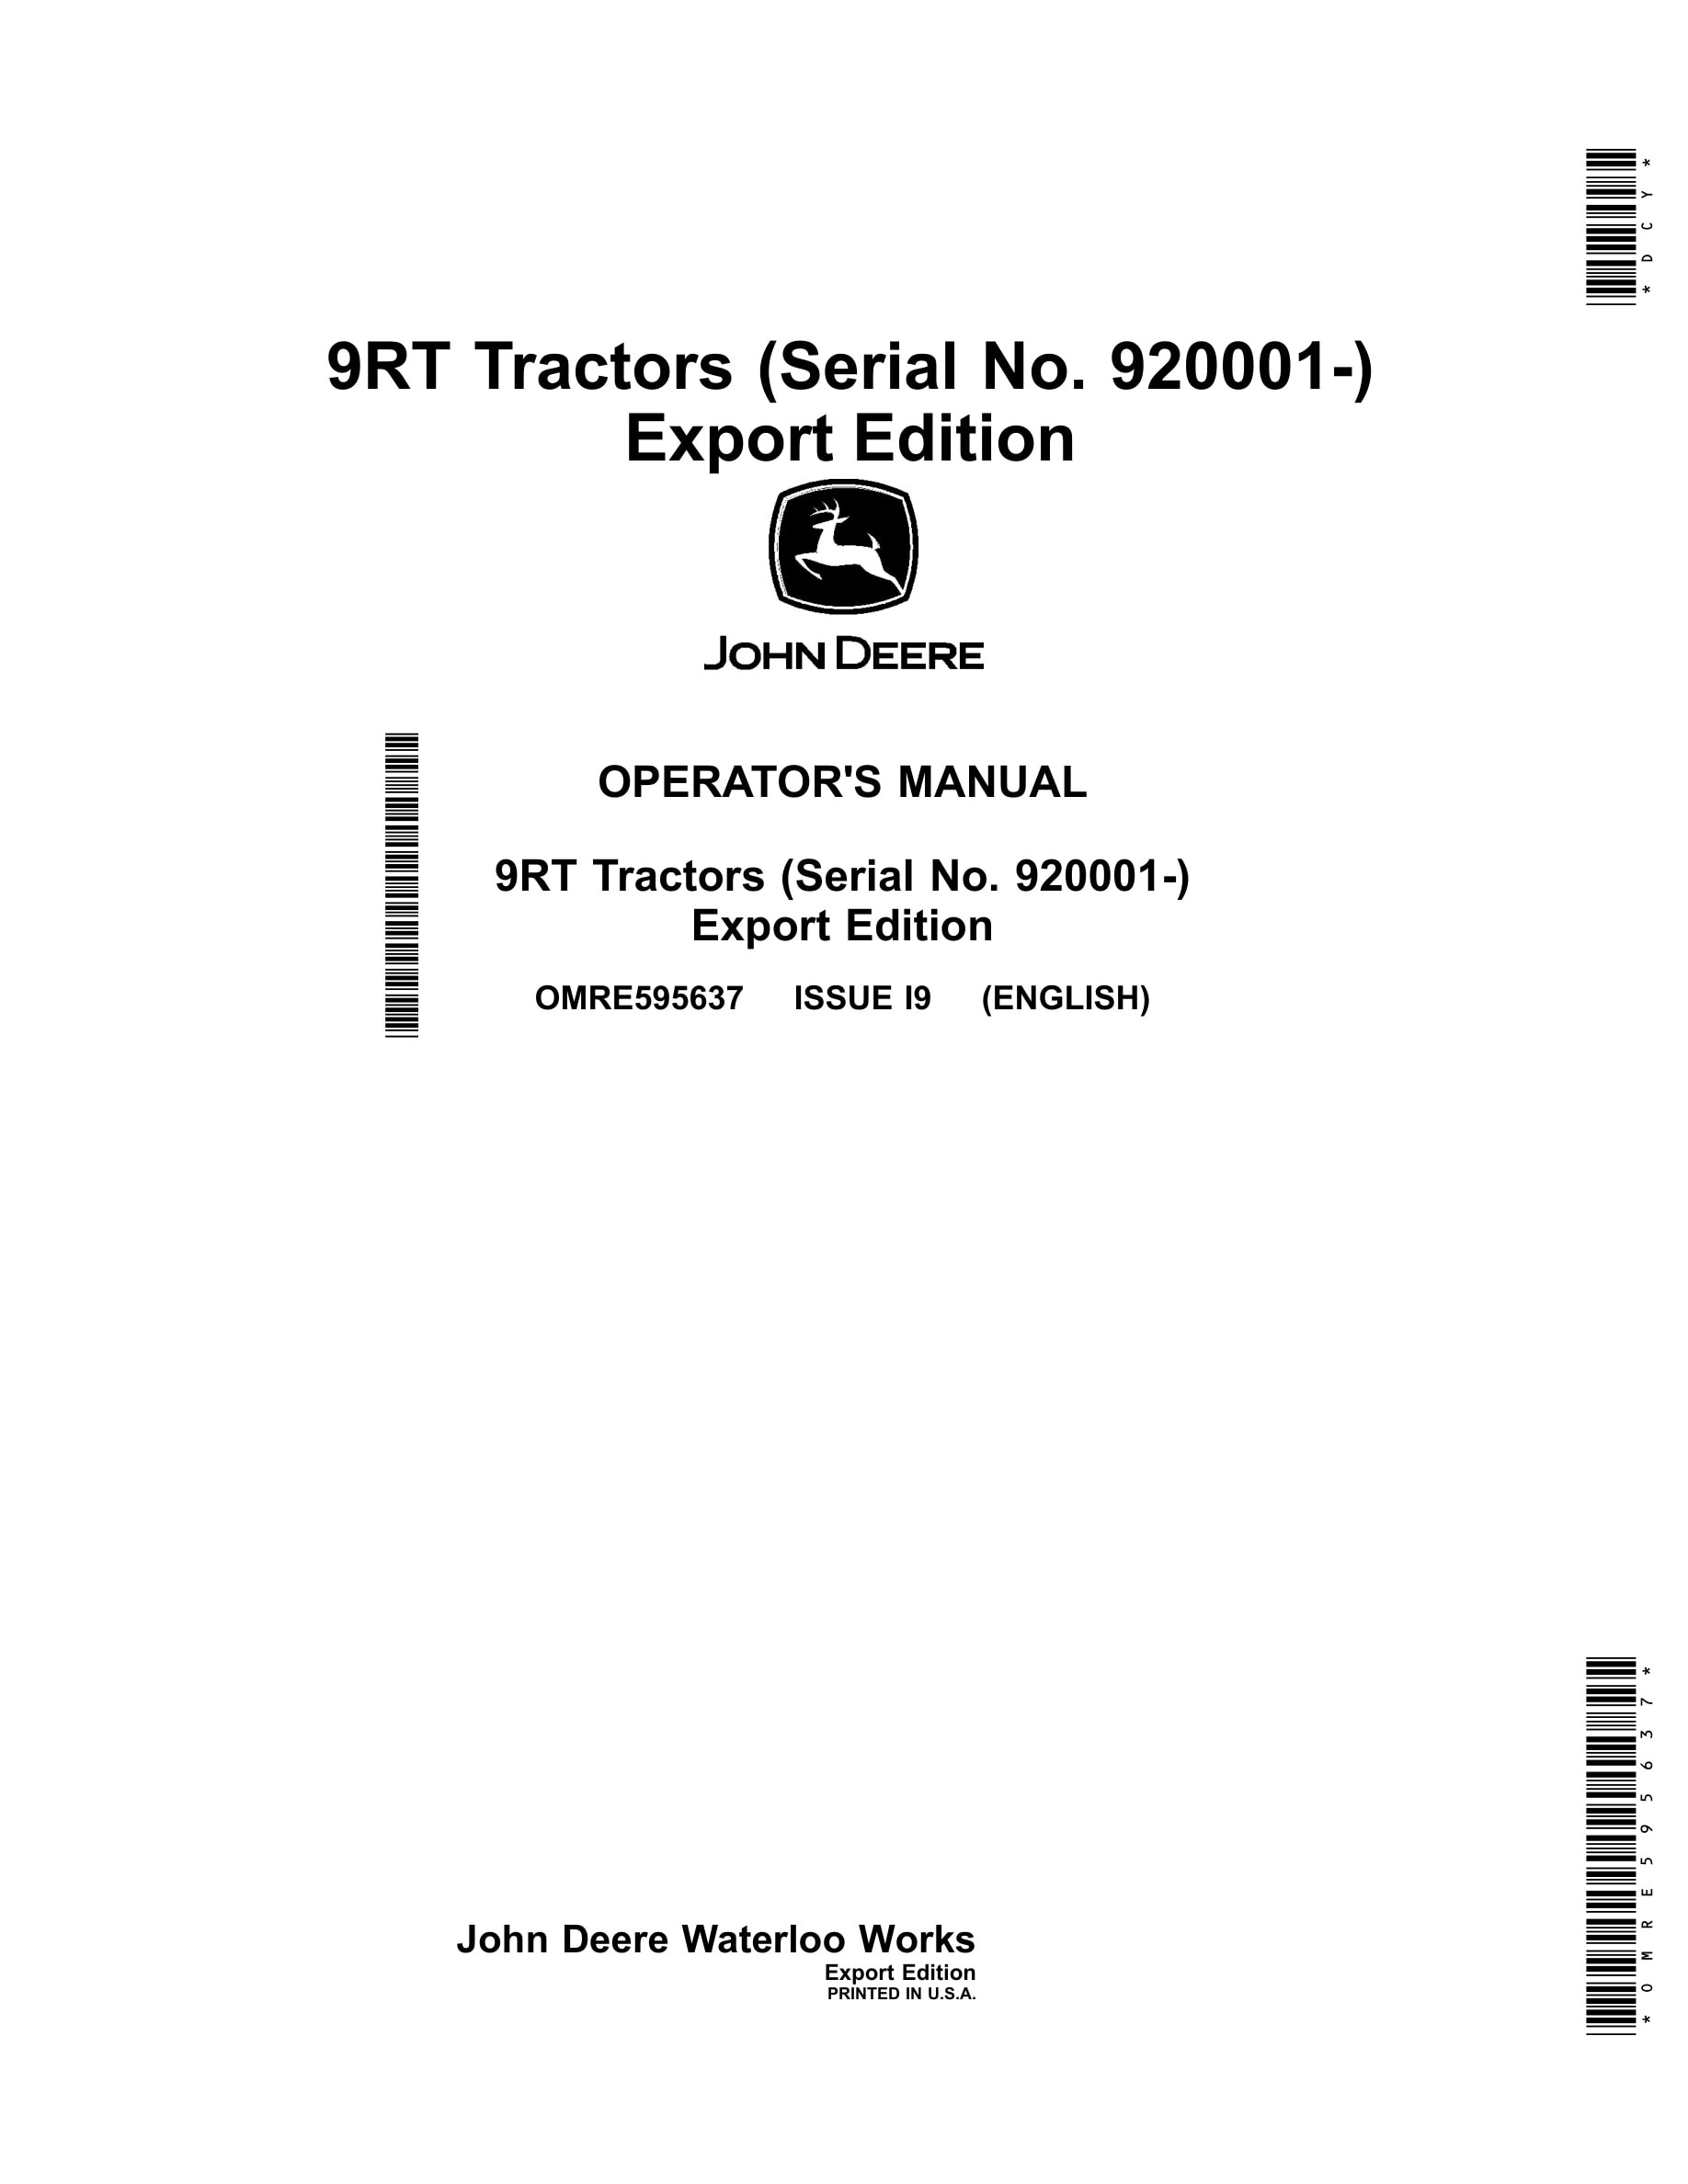 John Deere 9rt Tractors Operator Manuals OMRE595637-1